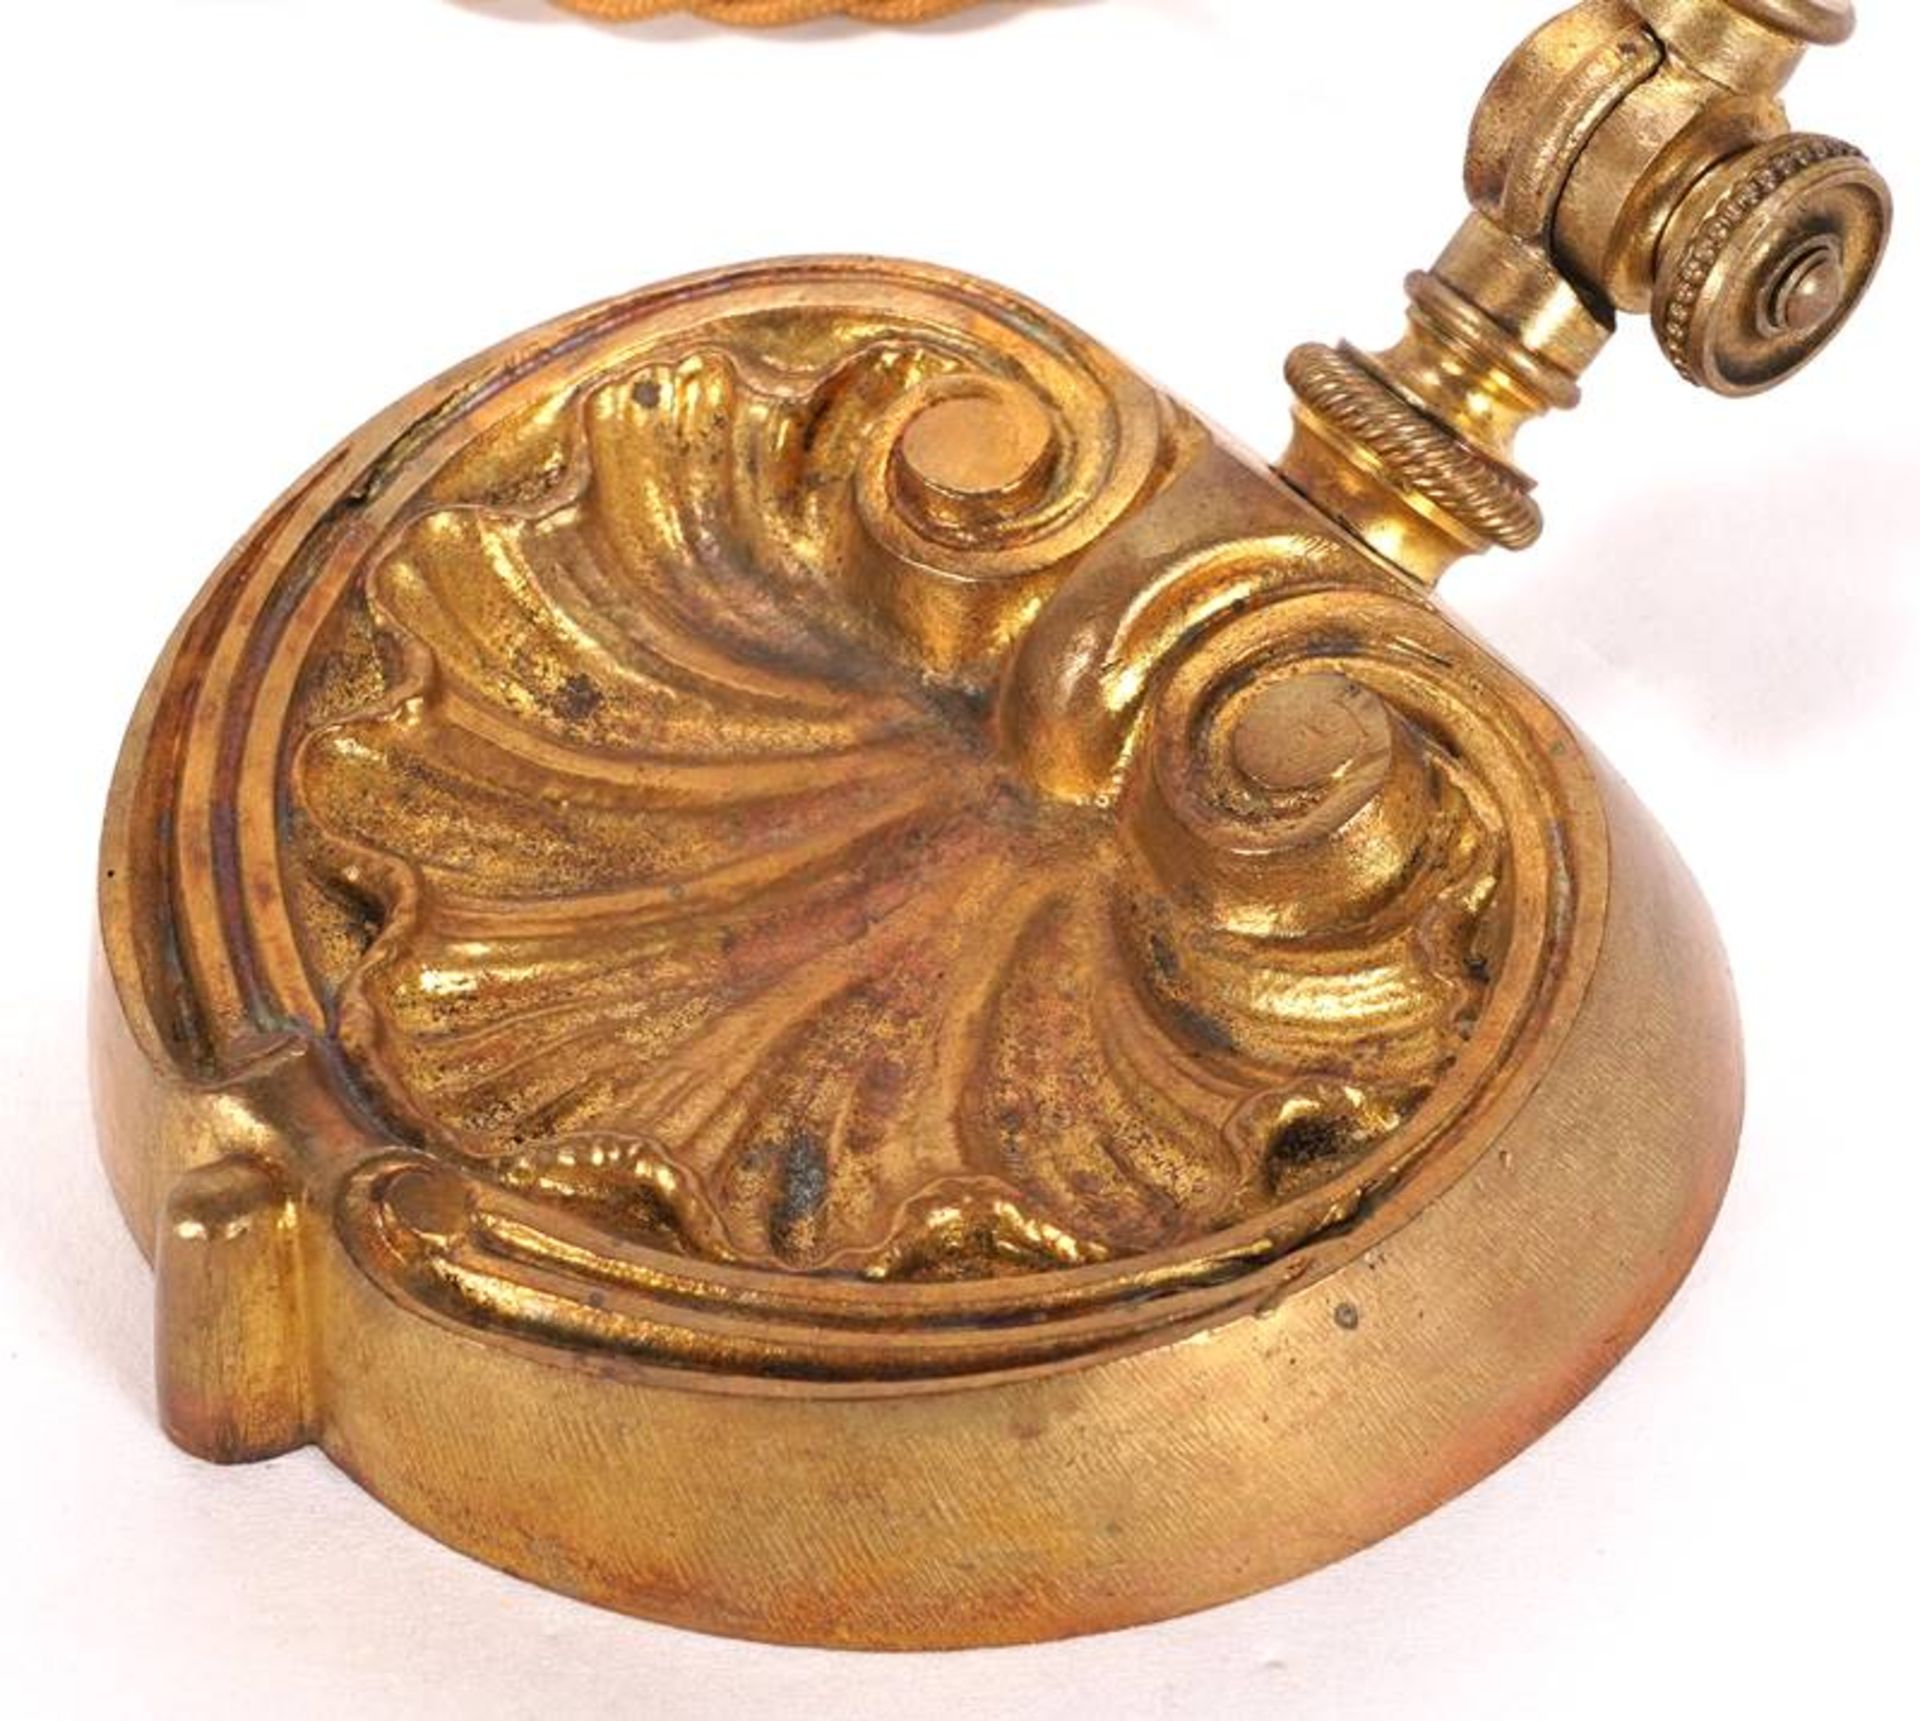 Art Nouveau Table Lamp - Image 3 of 7